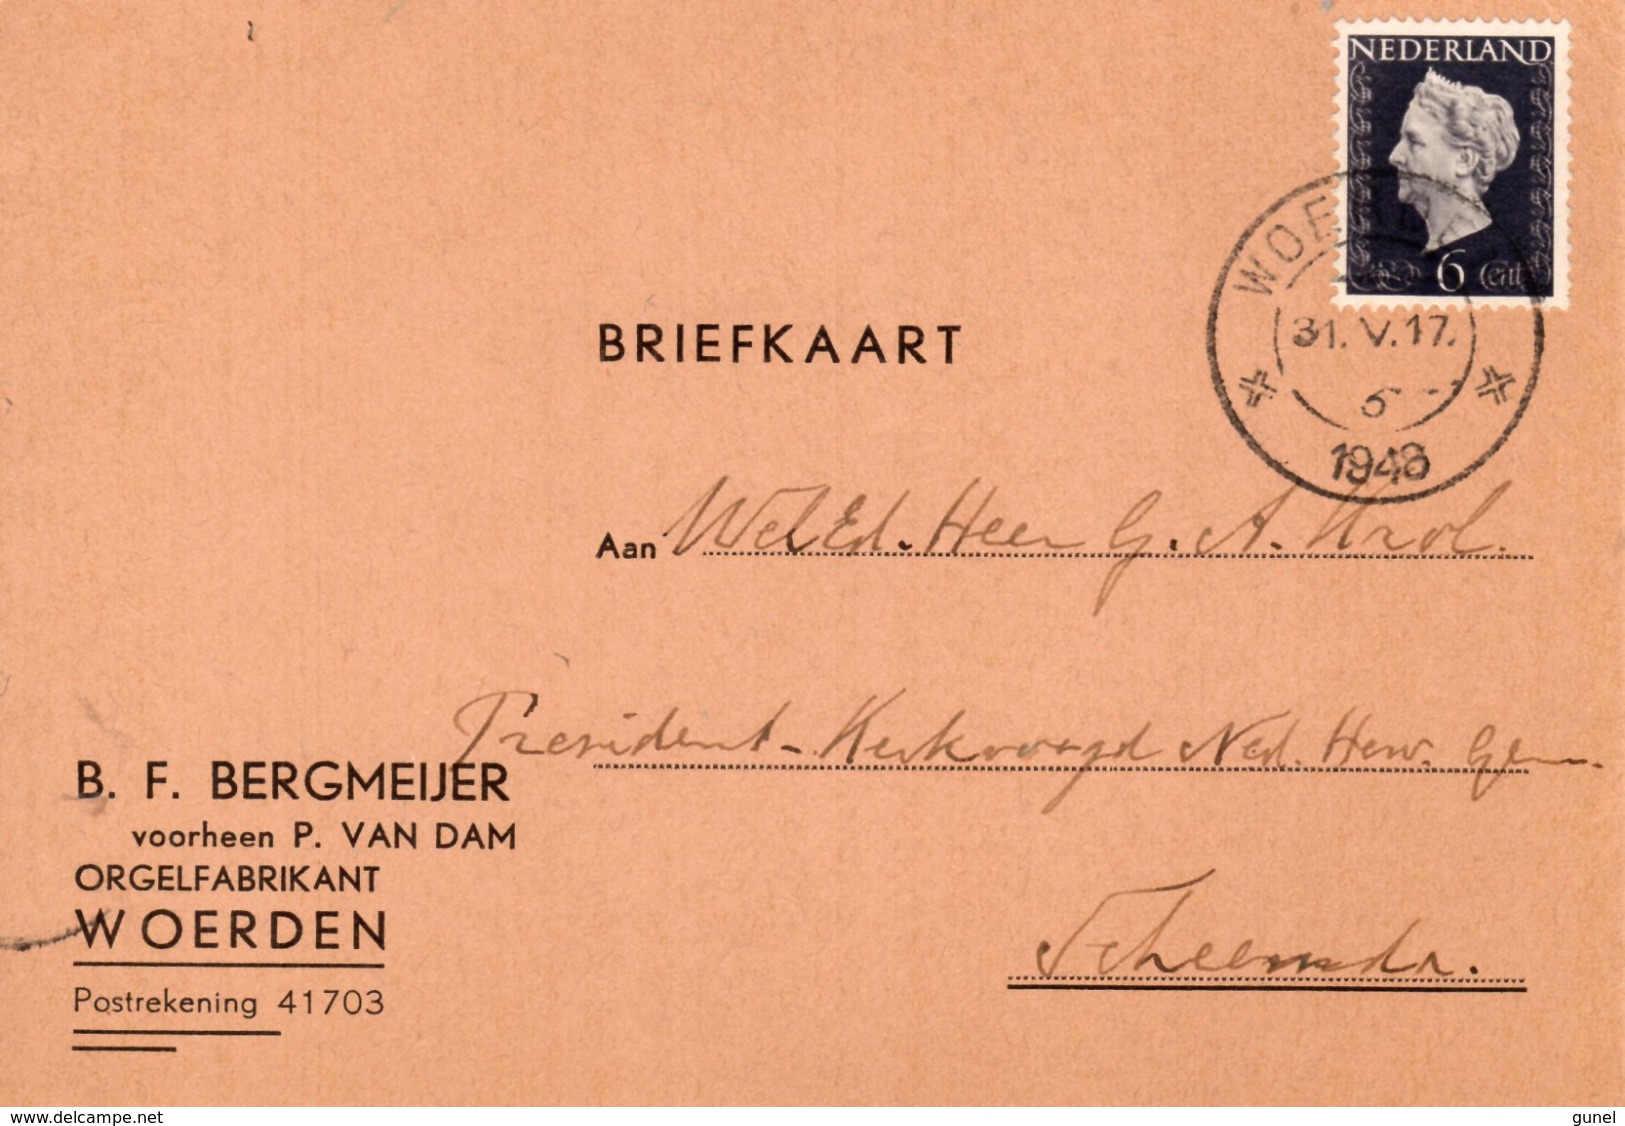 1943 Briefkaart Van Woerden Met Firmalogo (orgelfabrikant) Naar Scheemda - Postal History